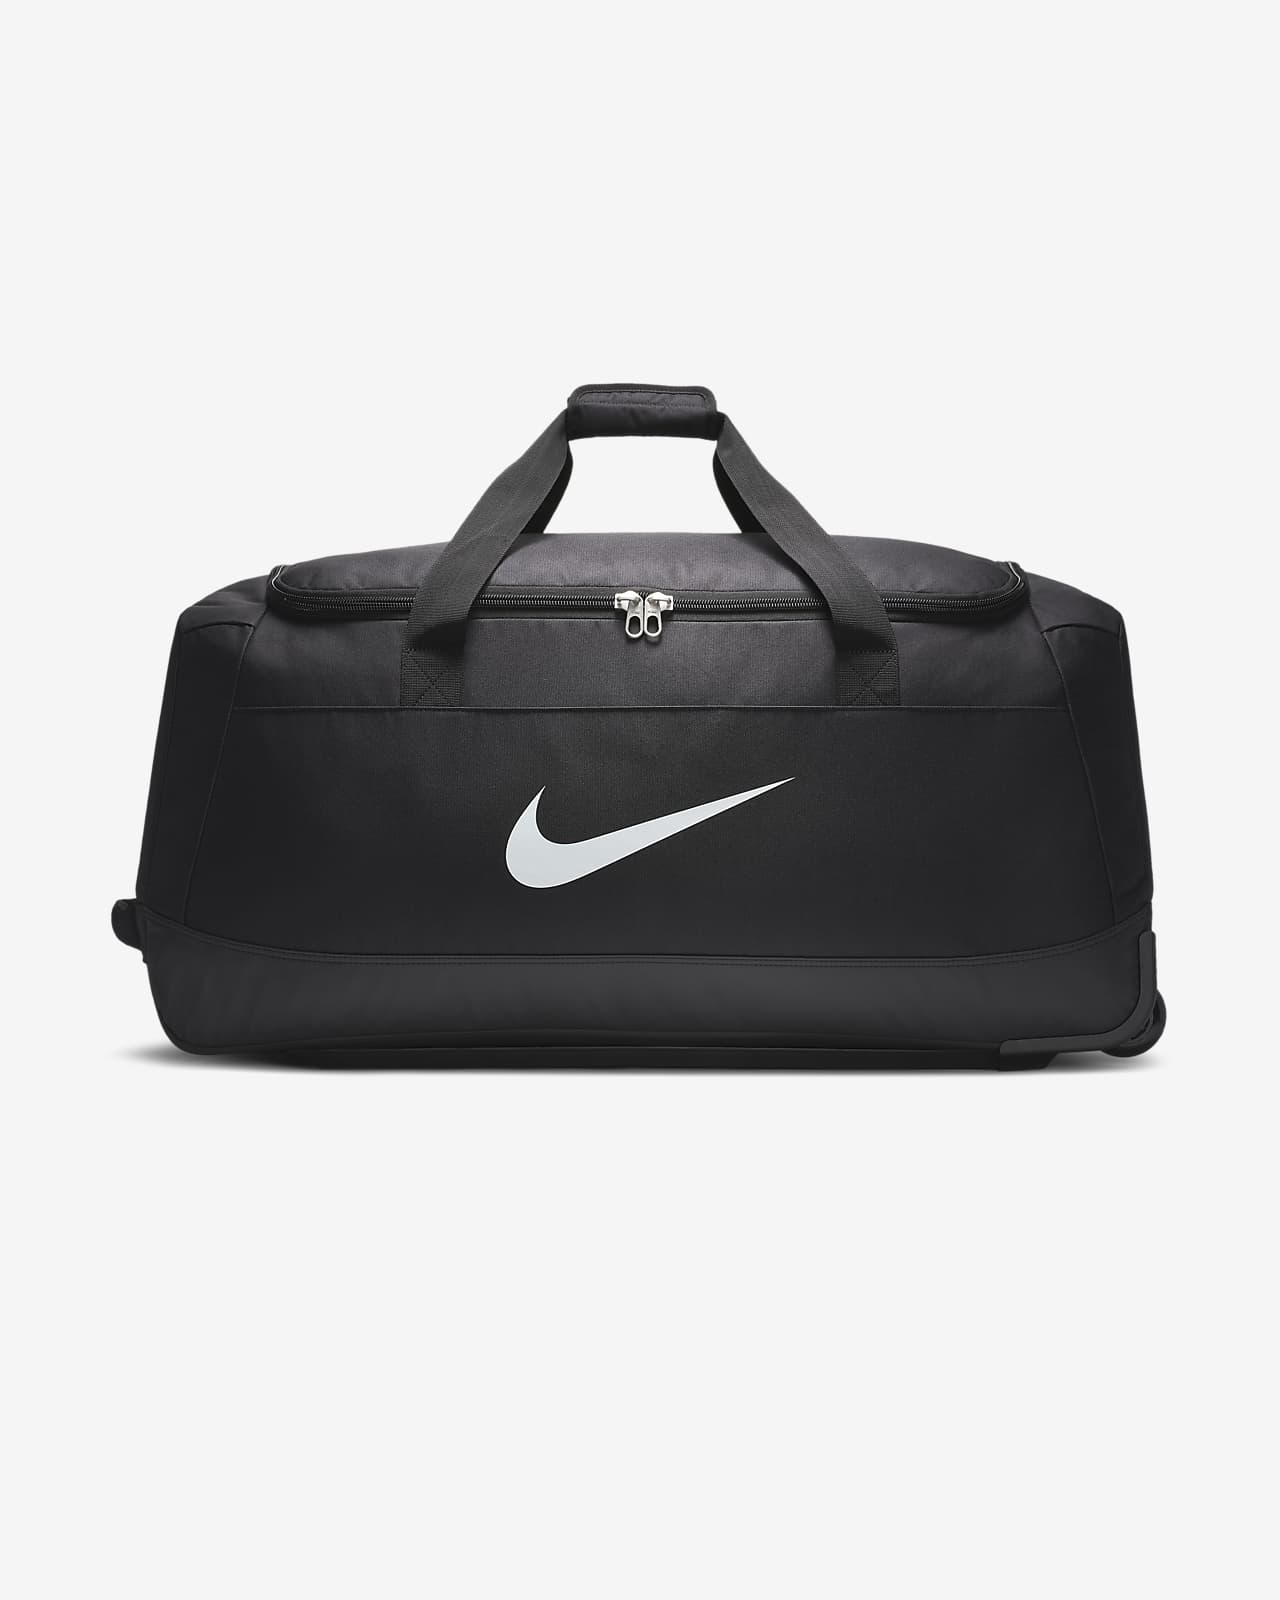 Βαλίτσα με ροδάκια Nike Club Team (120 L)